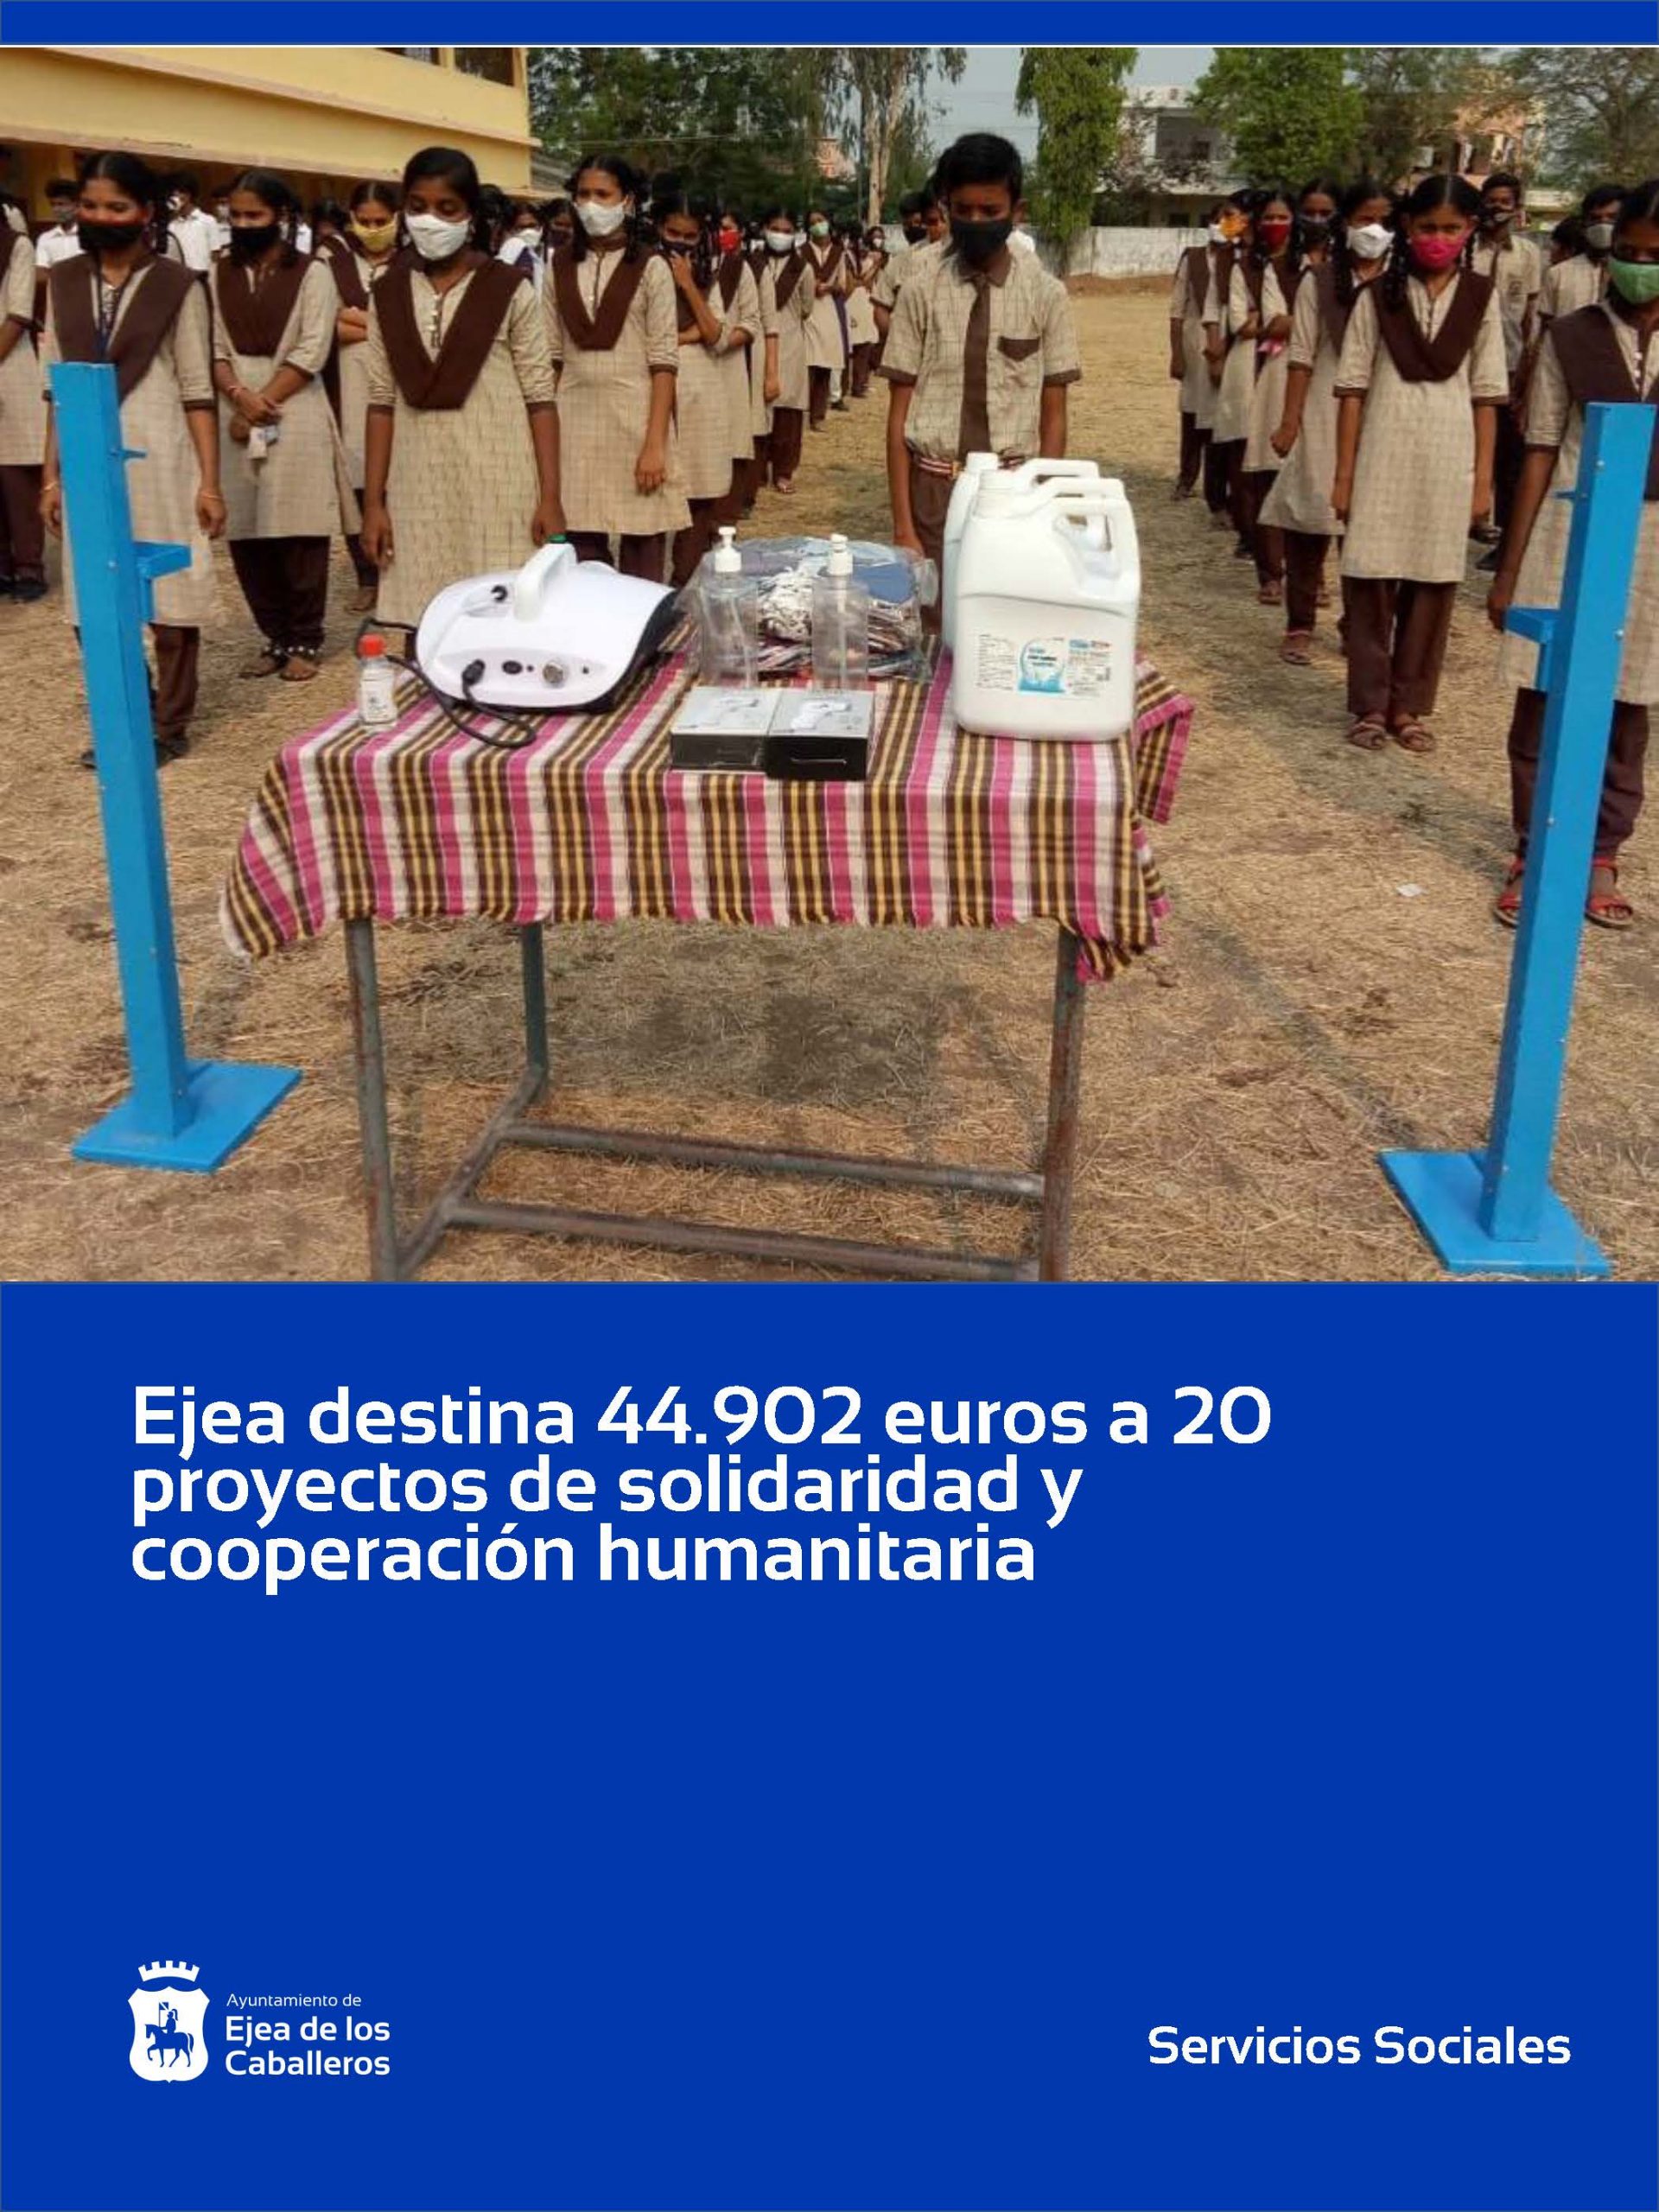 En este momento estás viendo El Ayuntamiento de Ejea de los Caballeros destina 44.902 euros a 20 proyectos de solidaridad, cooperación y ayuda humanitaria